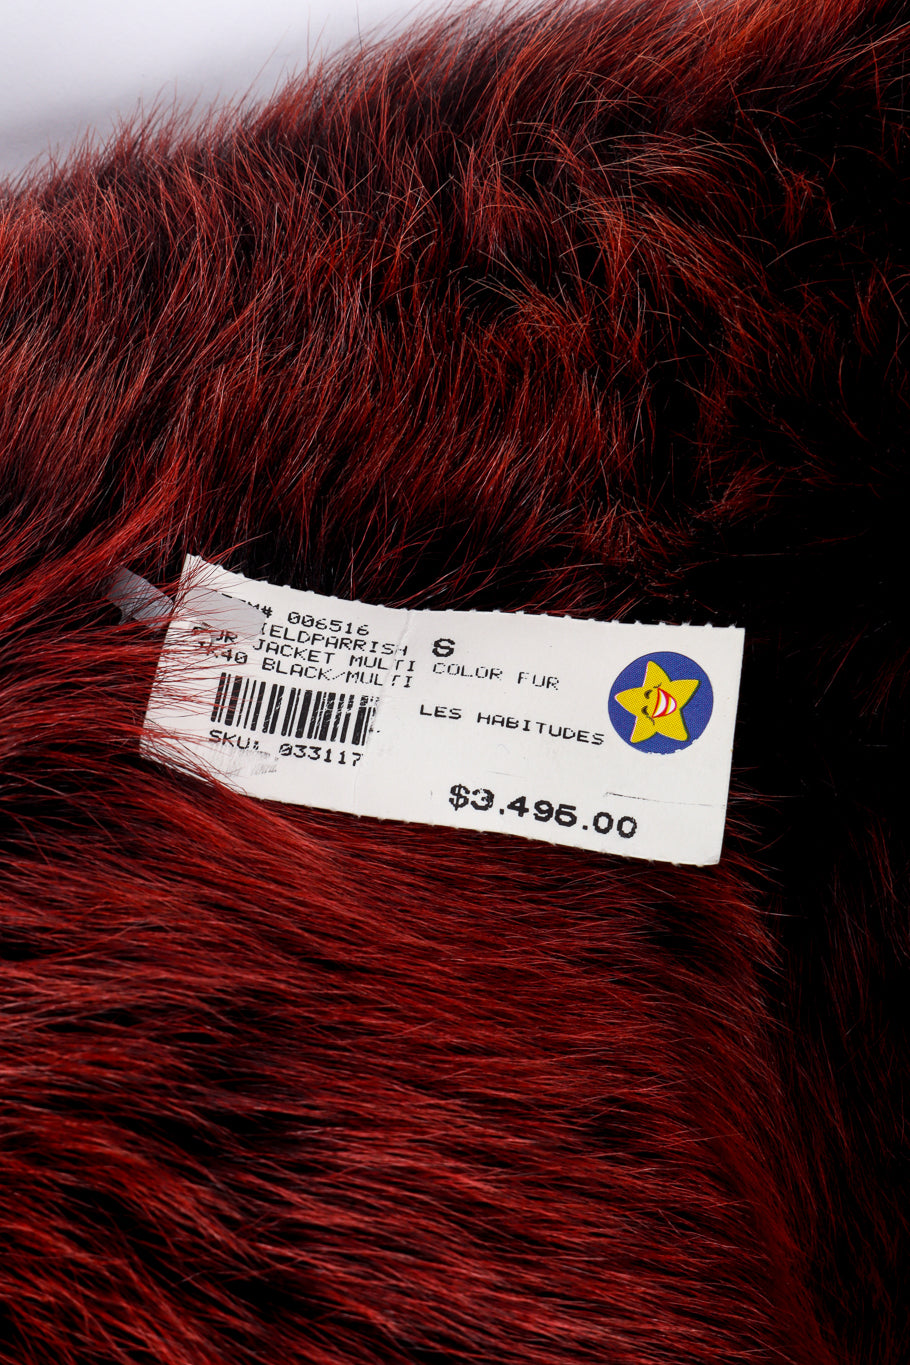 Vintage Les Habitudes Fur Trim Jacket tag closeup @recessla